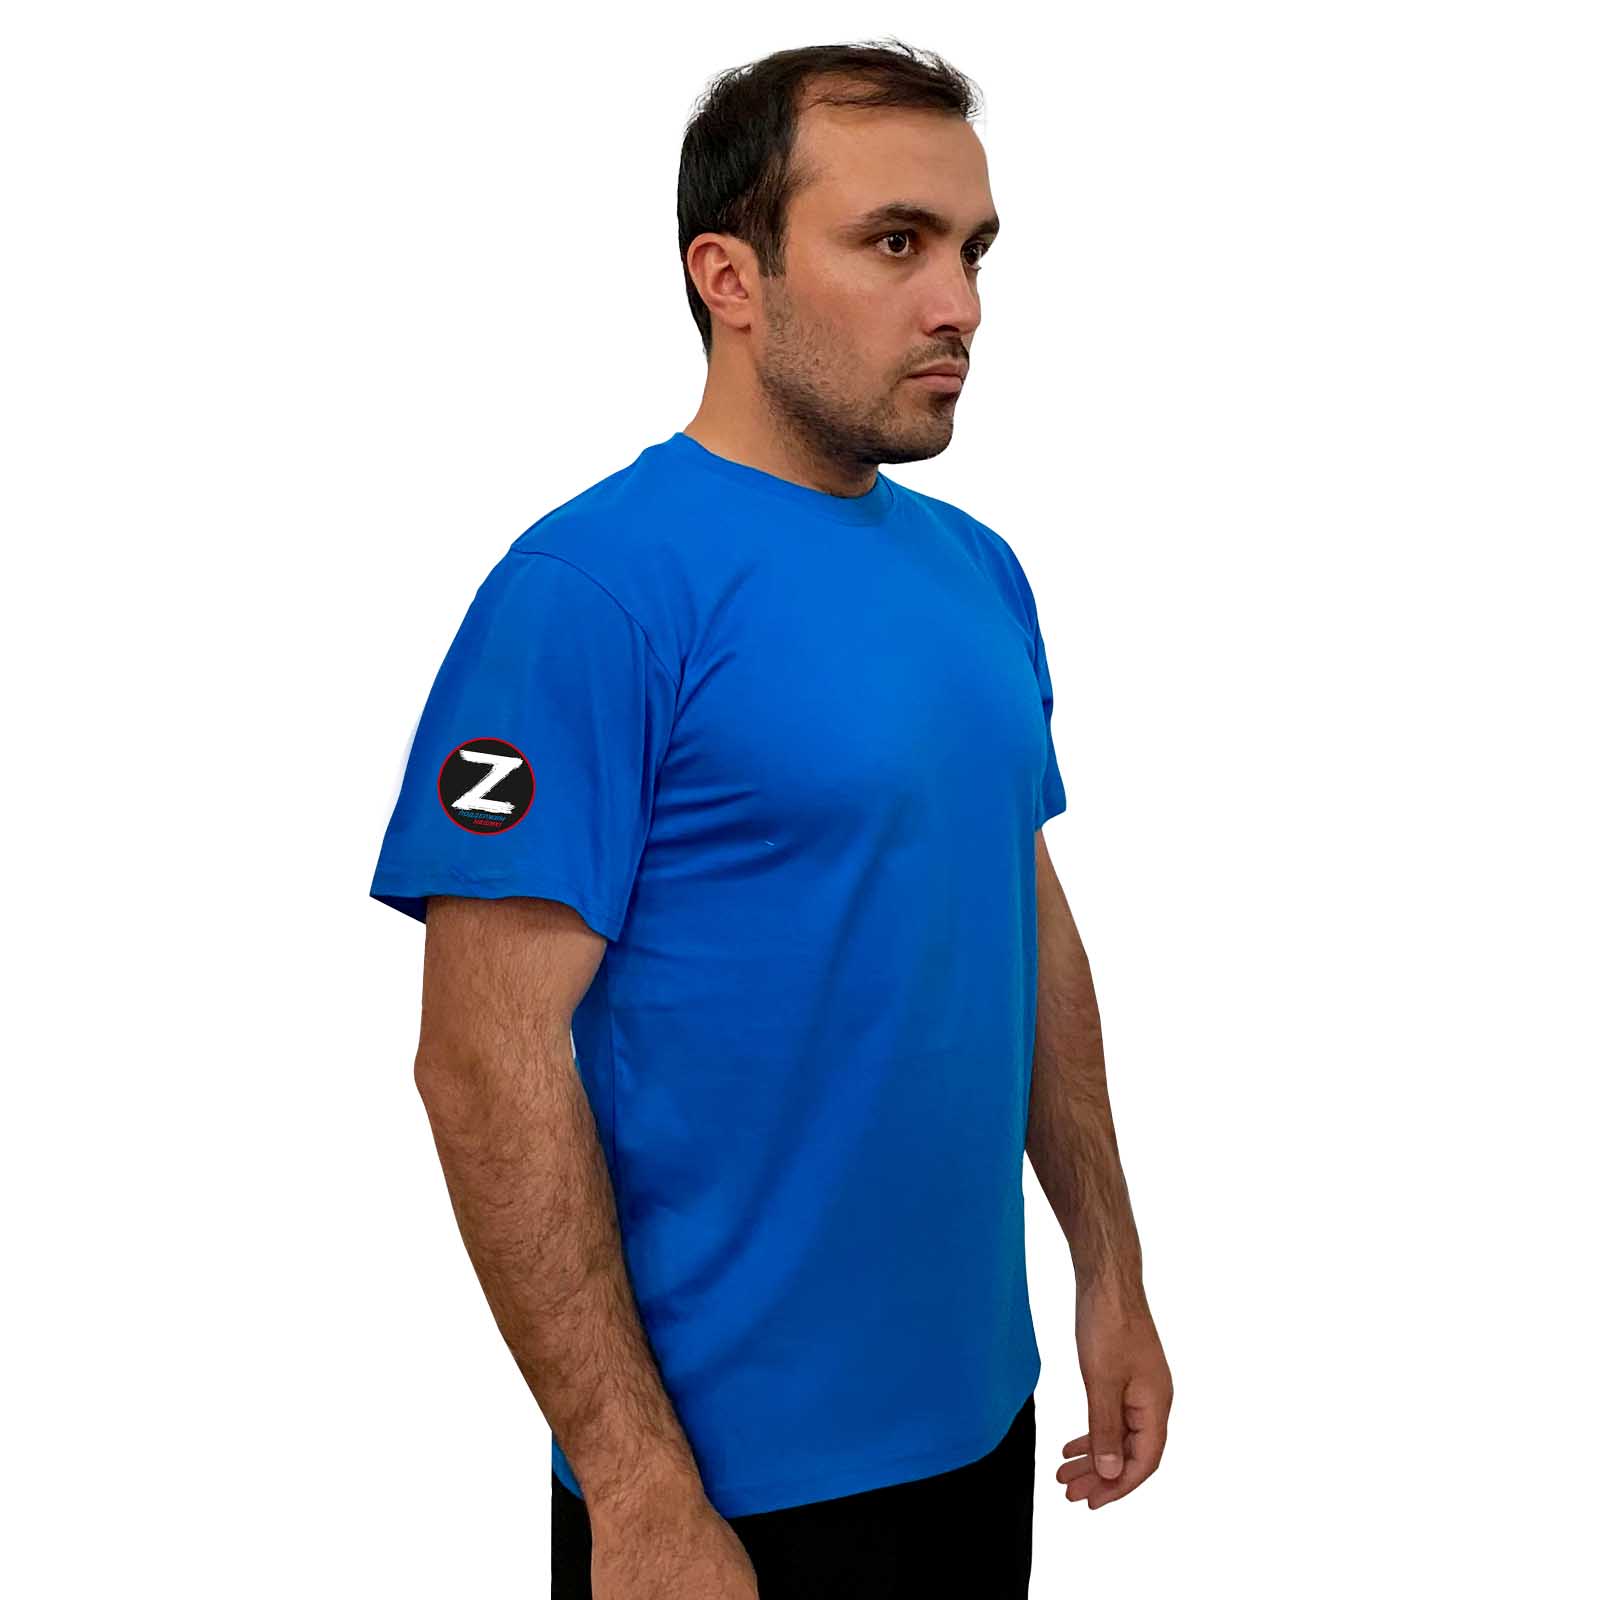 Купить голубую трикотажную футболку с литерой Z онлайн